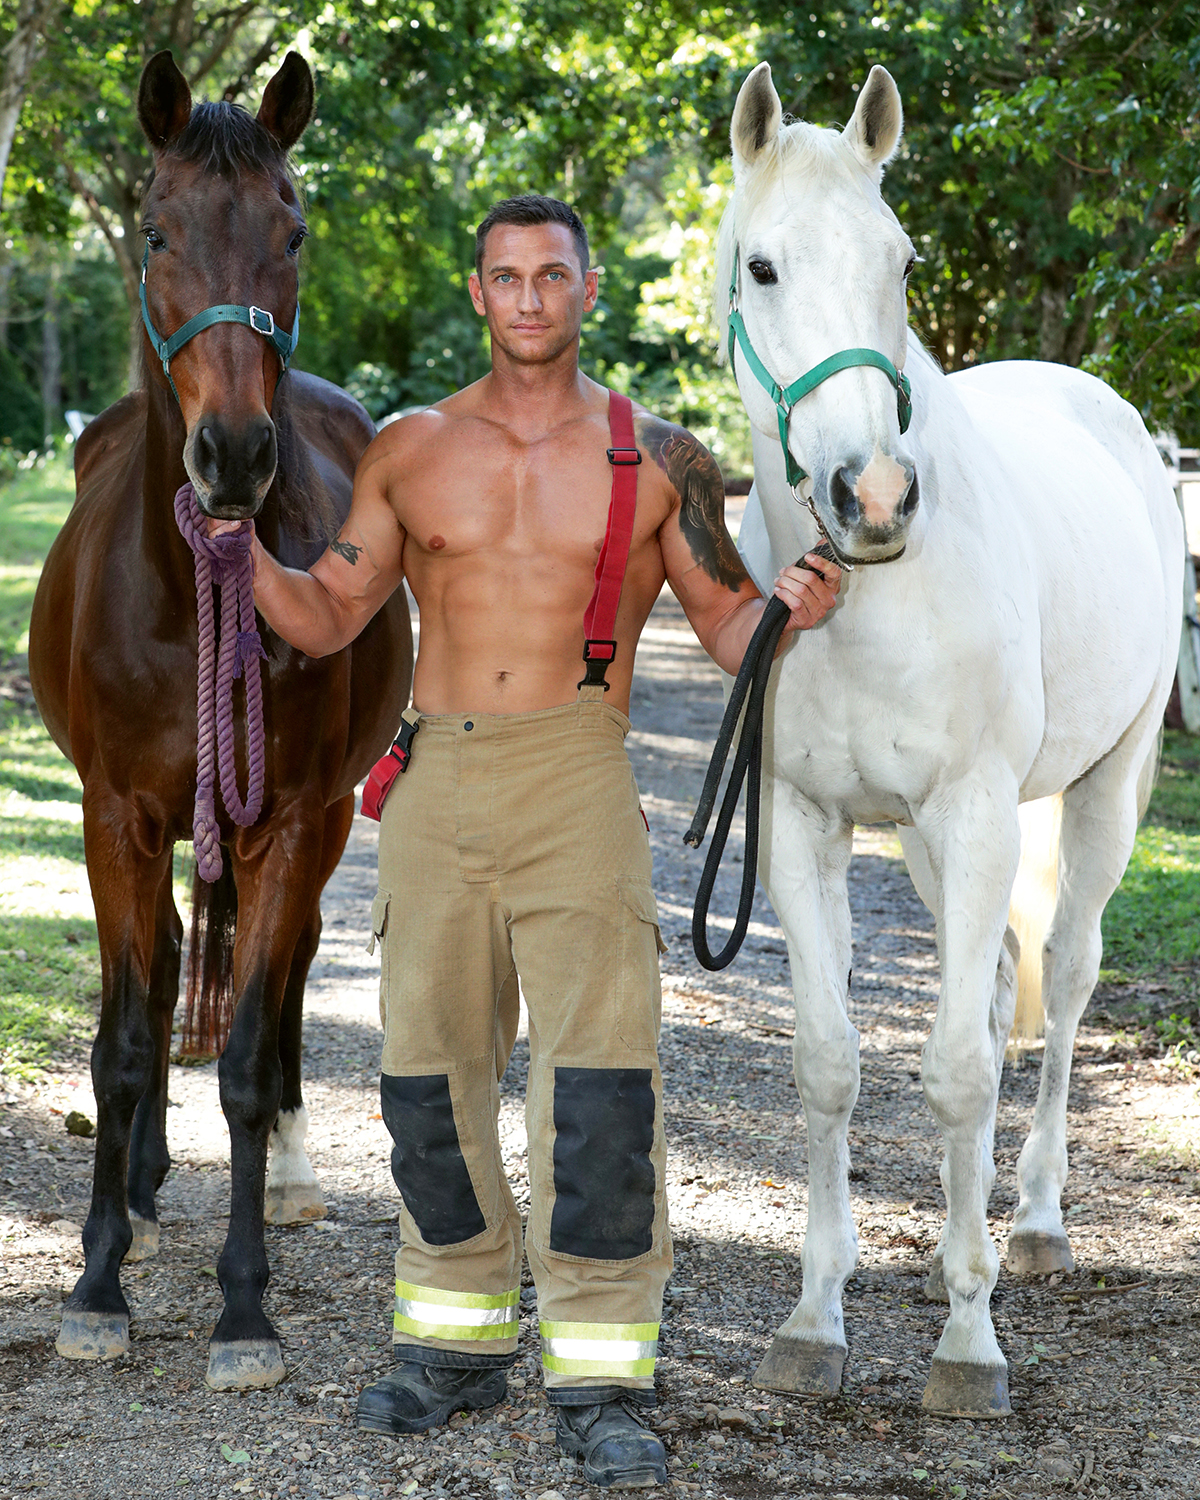 Les pompiers australiens dévoilent leur calendrier sexy pour 2022 ! (vidéo sur Bidfoly.com) Par Justine Mellado Pompiers-australiens-calendrier-sexy-2022-cover-horse